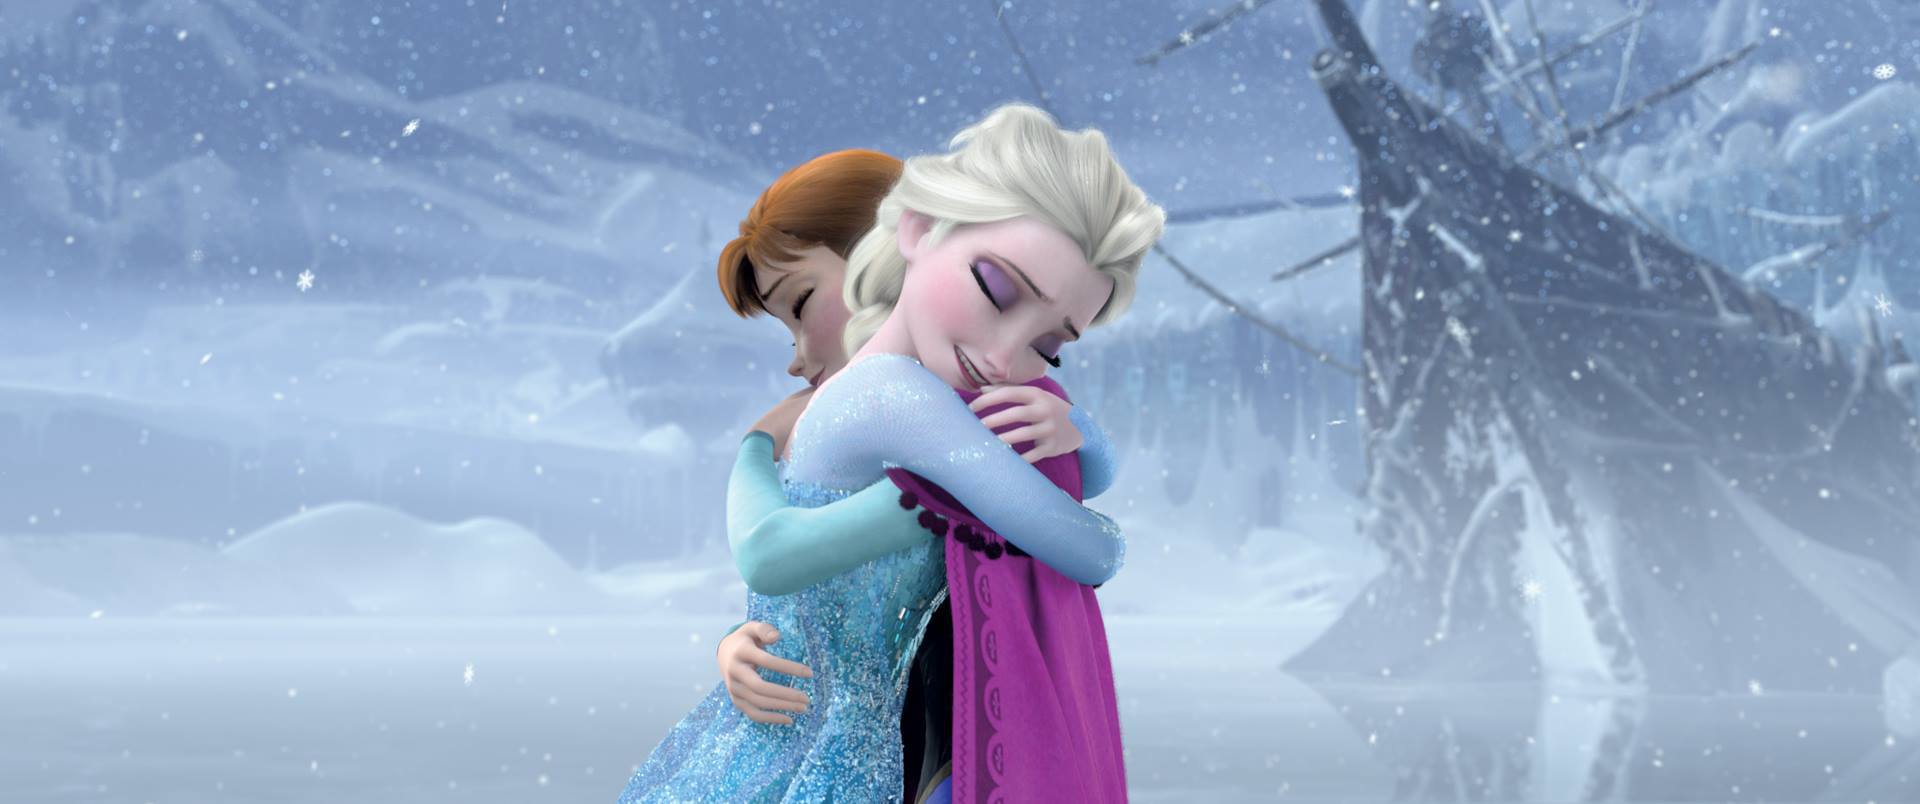 Anna Frozen Elsa Frozen Frozen Movie 1920x804